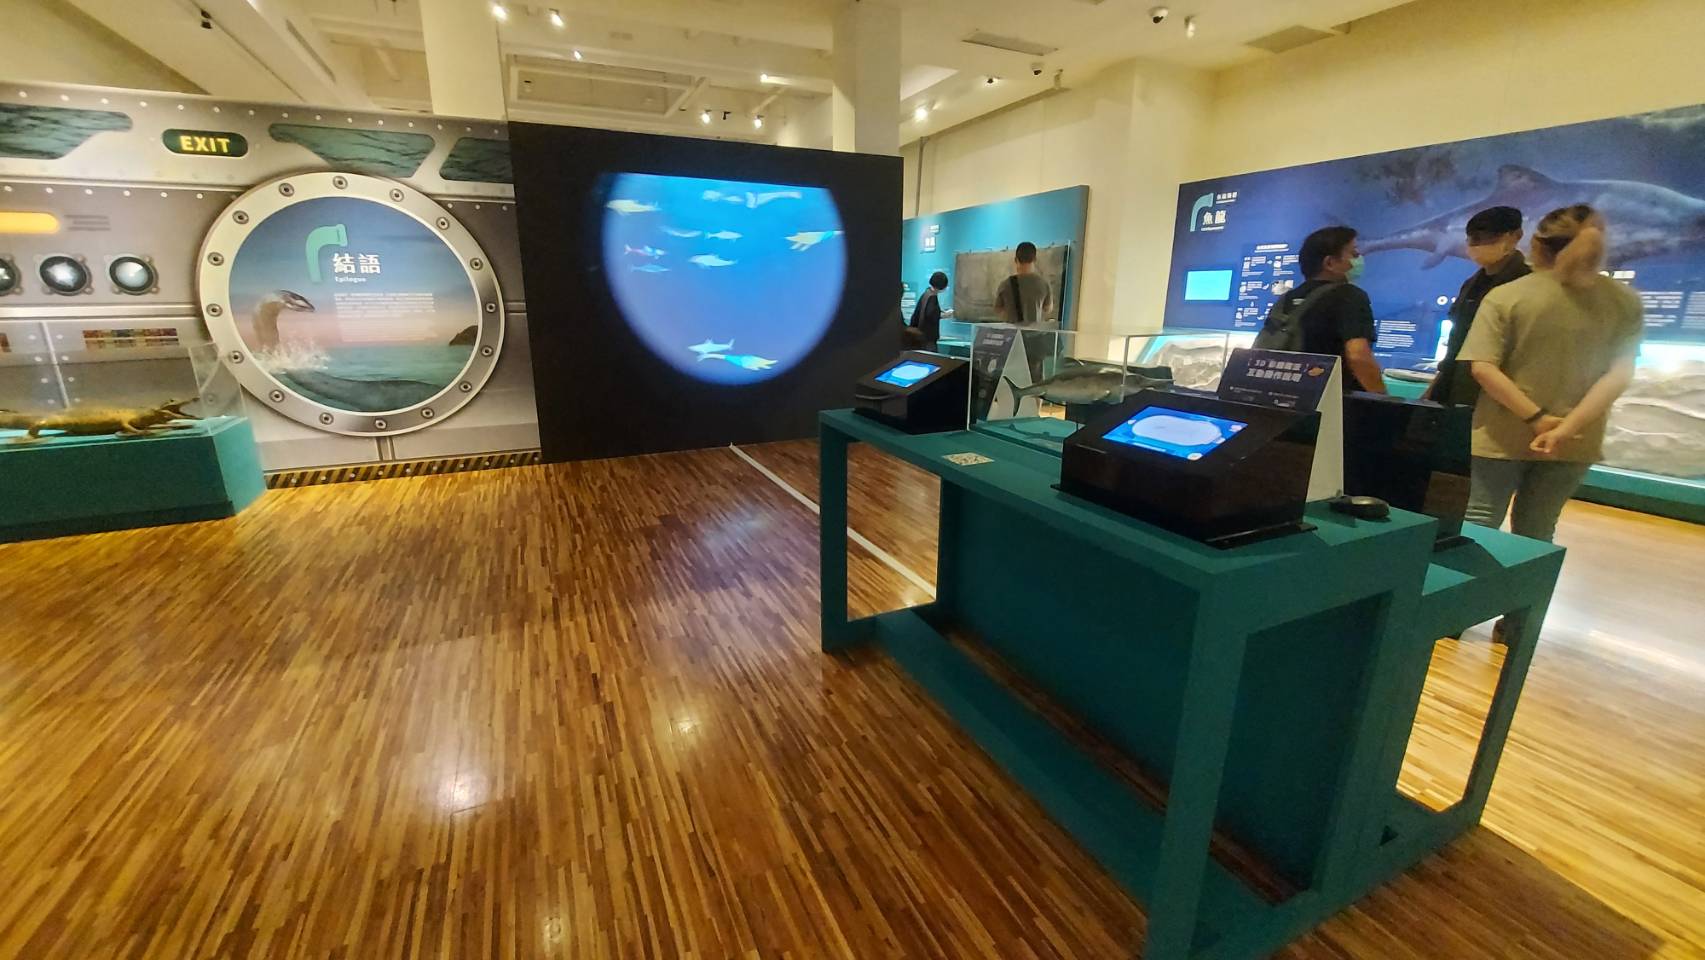 「彩繪投影實境的互動樂趣」 國立臺灣博物館水怪展 3D彩繪魔法海底世界 虛擬實境互動